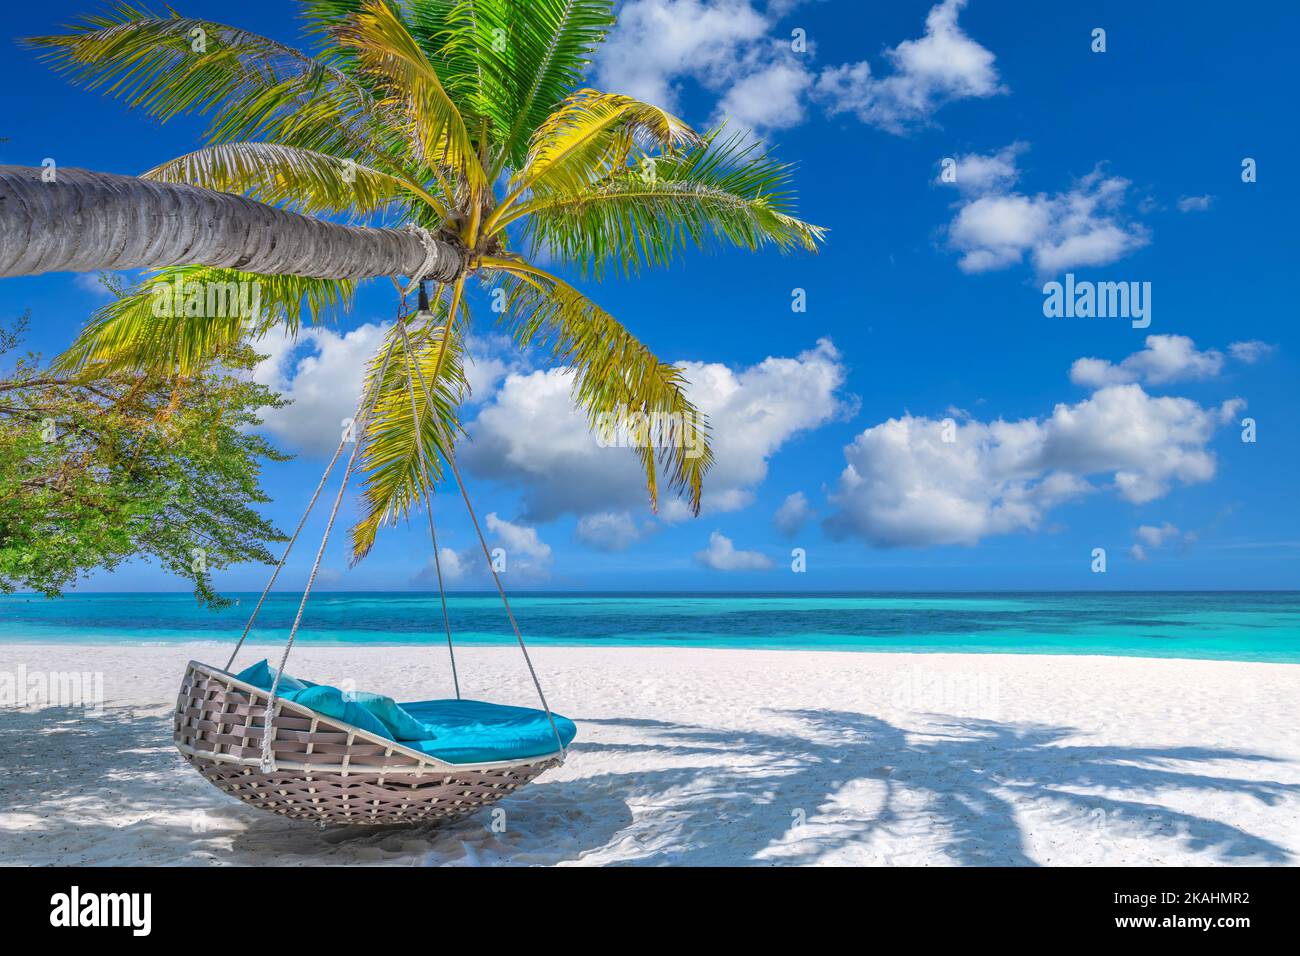 Tropischer Relax-Strand als Sommerinsel-Landschaft mit Strandschaukel auf Palmen, in der Nähe von fantastischem Meerblick und Sand. Unglaublicher Strandpanorama-Urlaub. Friedlich Stockfoto